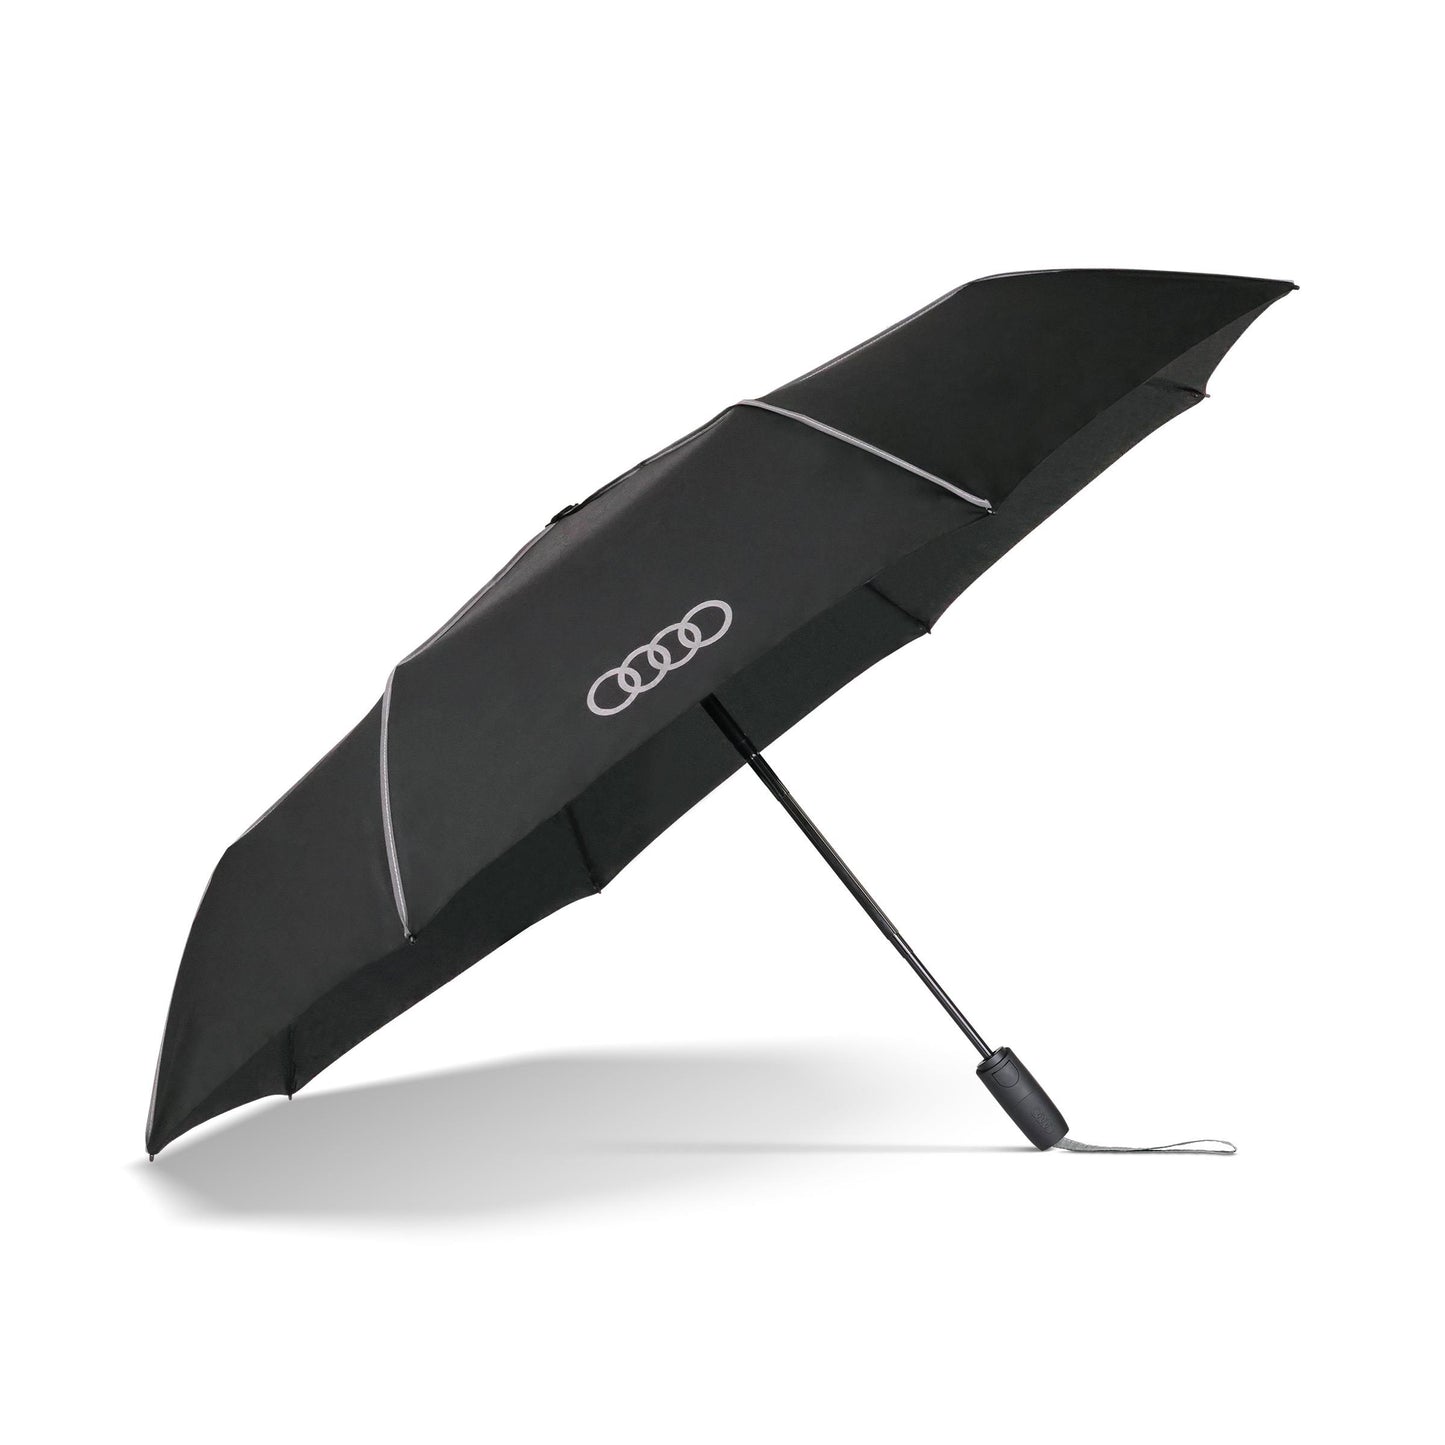 Audi Pocket umbrella, black